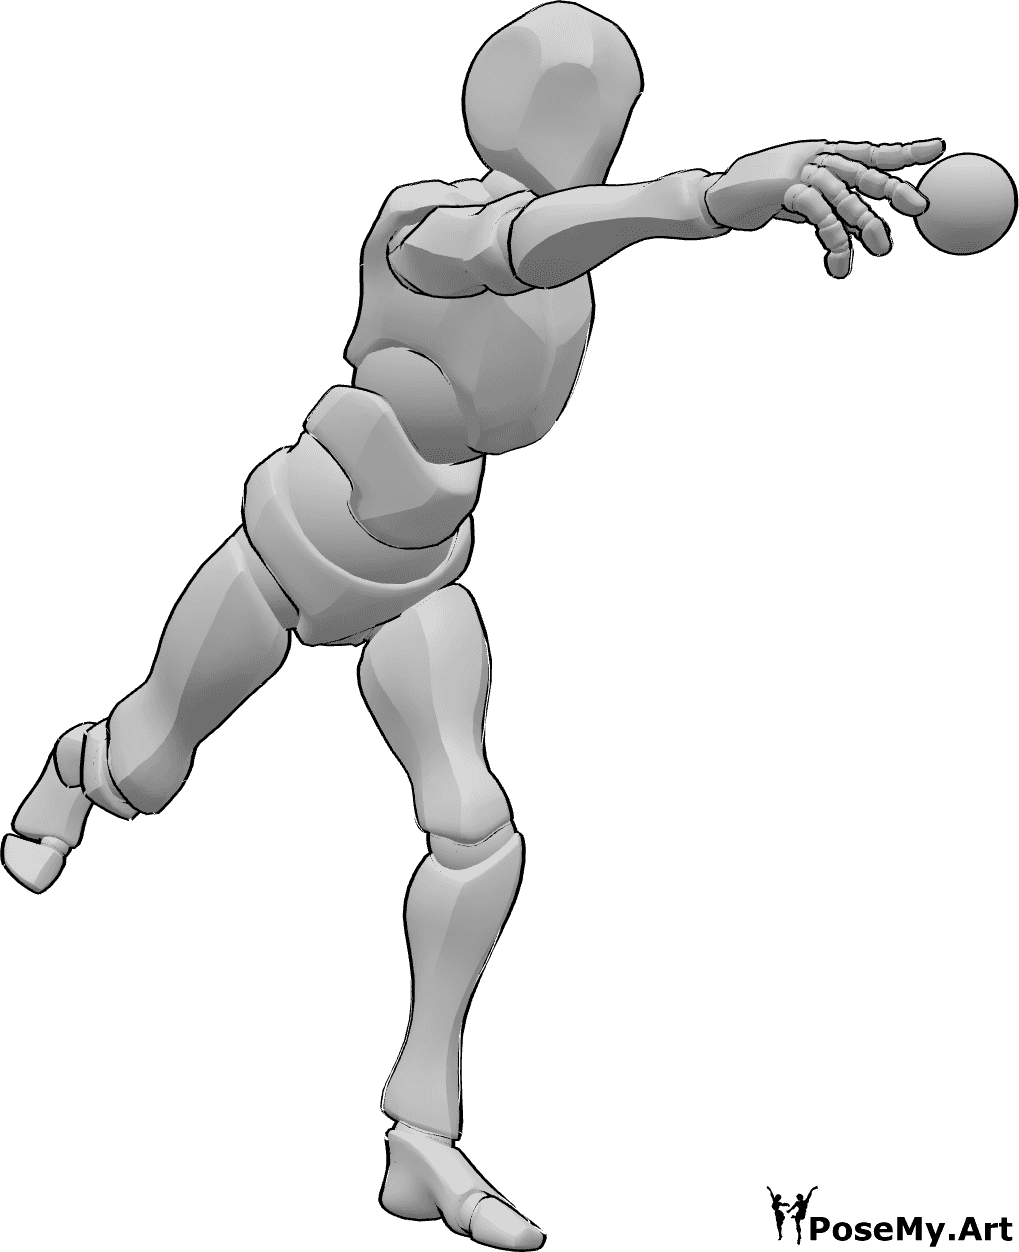 Referencia de poses- Postura de lanzamiento de béisbol - Jugador de béisbol de pie lanzando la pelota con la mano derecha